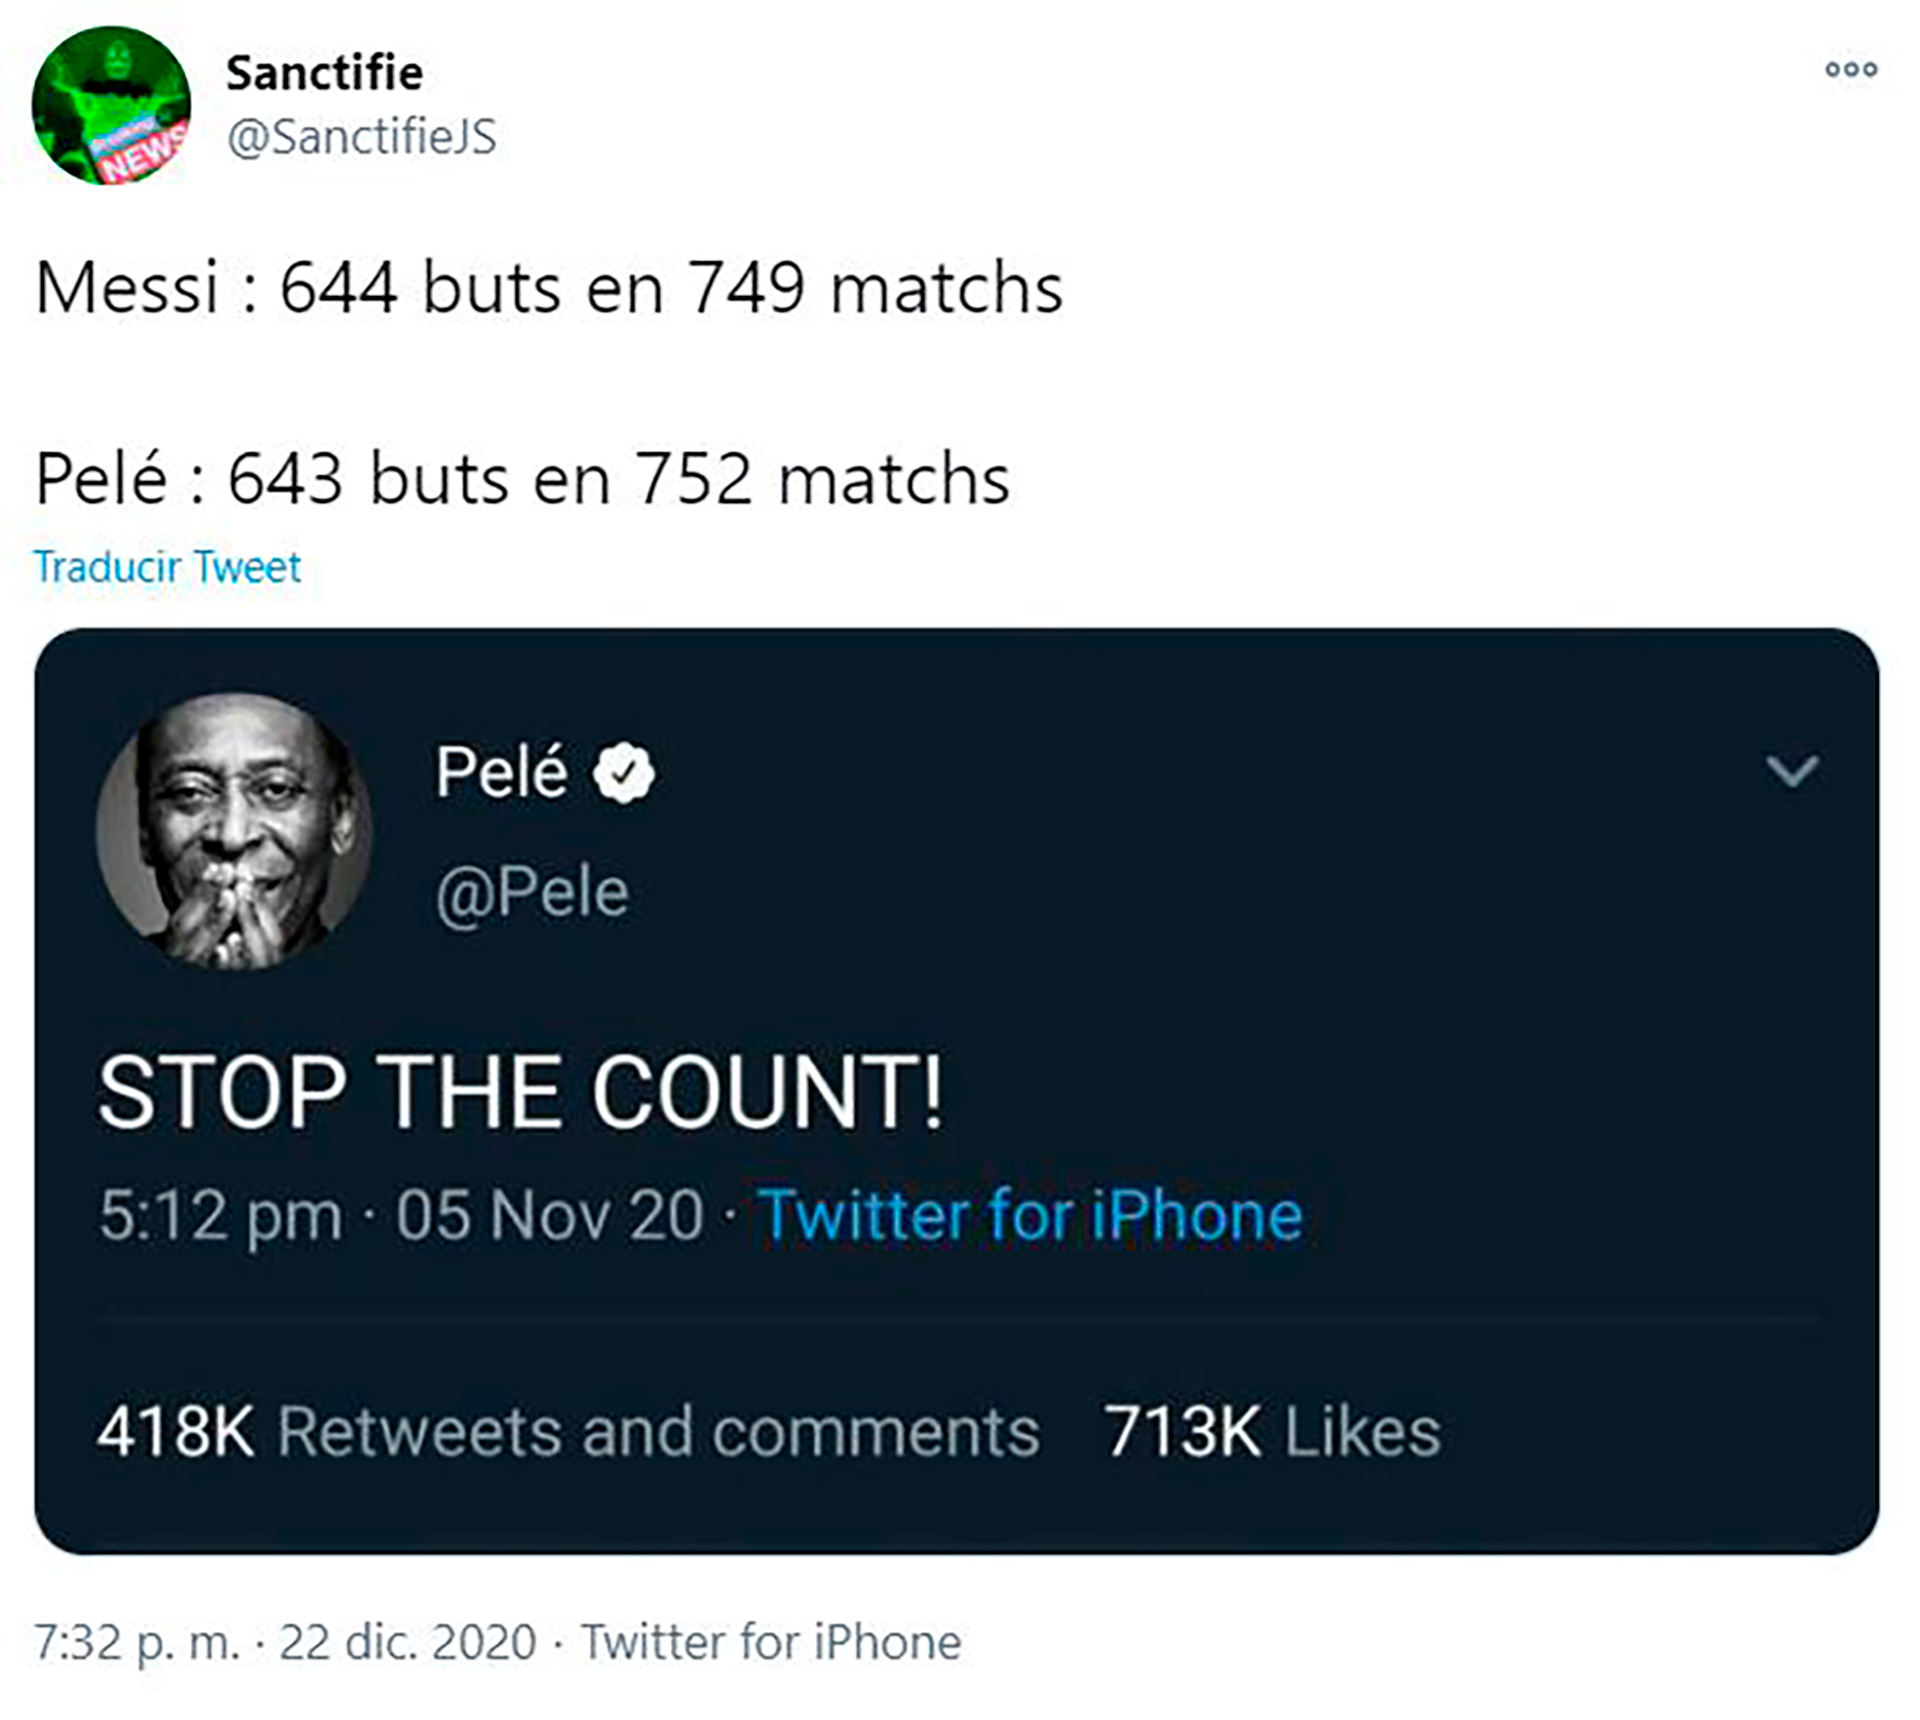 "¡Paren la cuenta!", el tuit recuperado de Pelé en forma de meme para la ocasión 